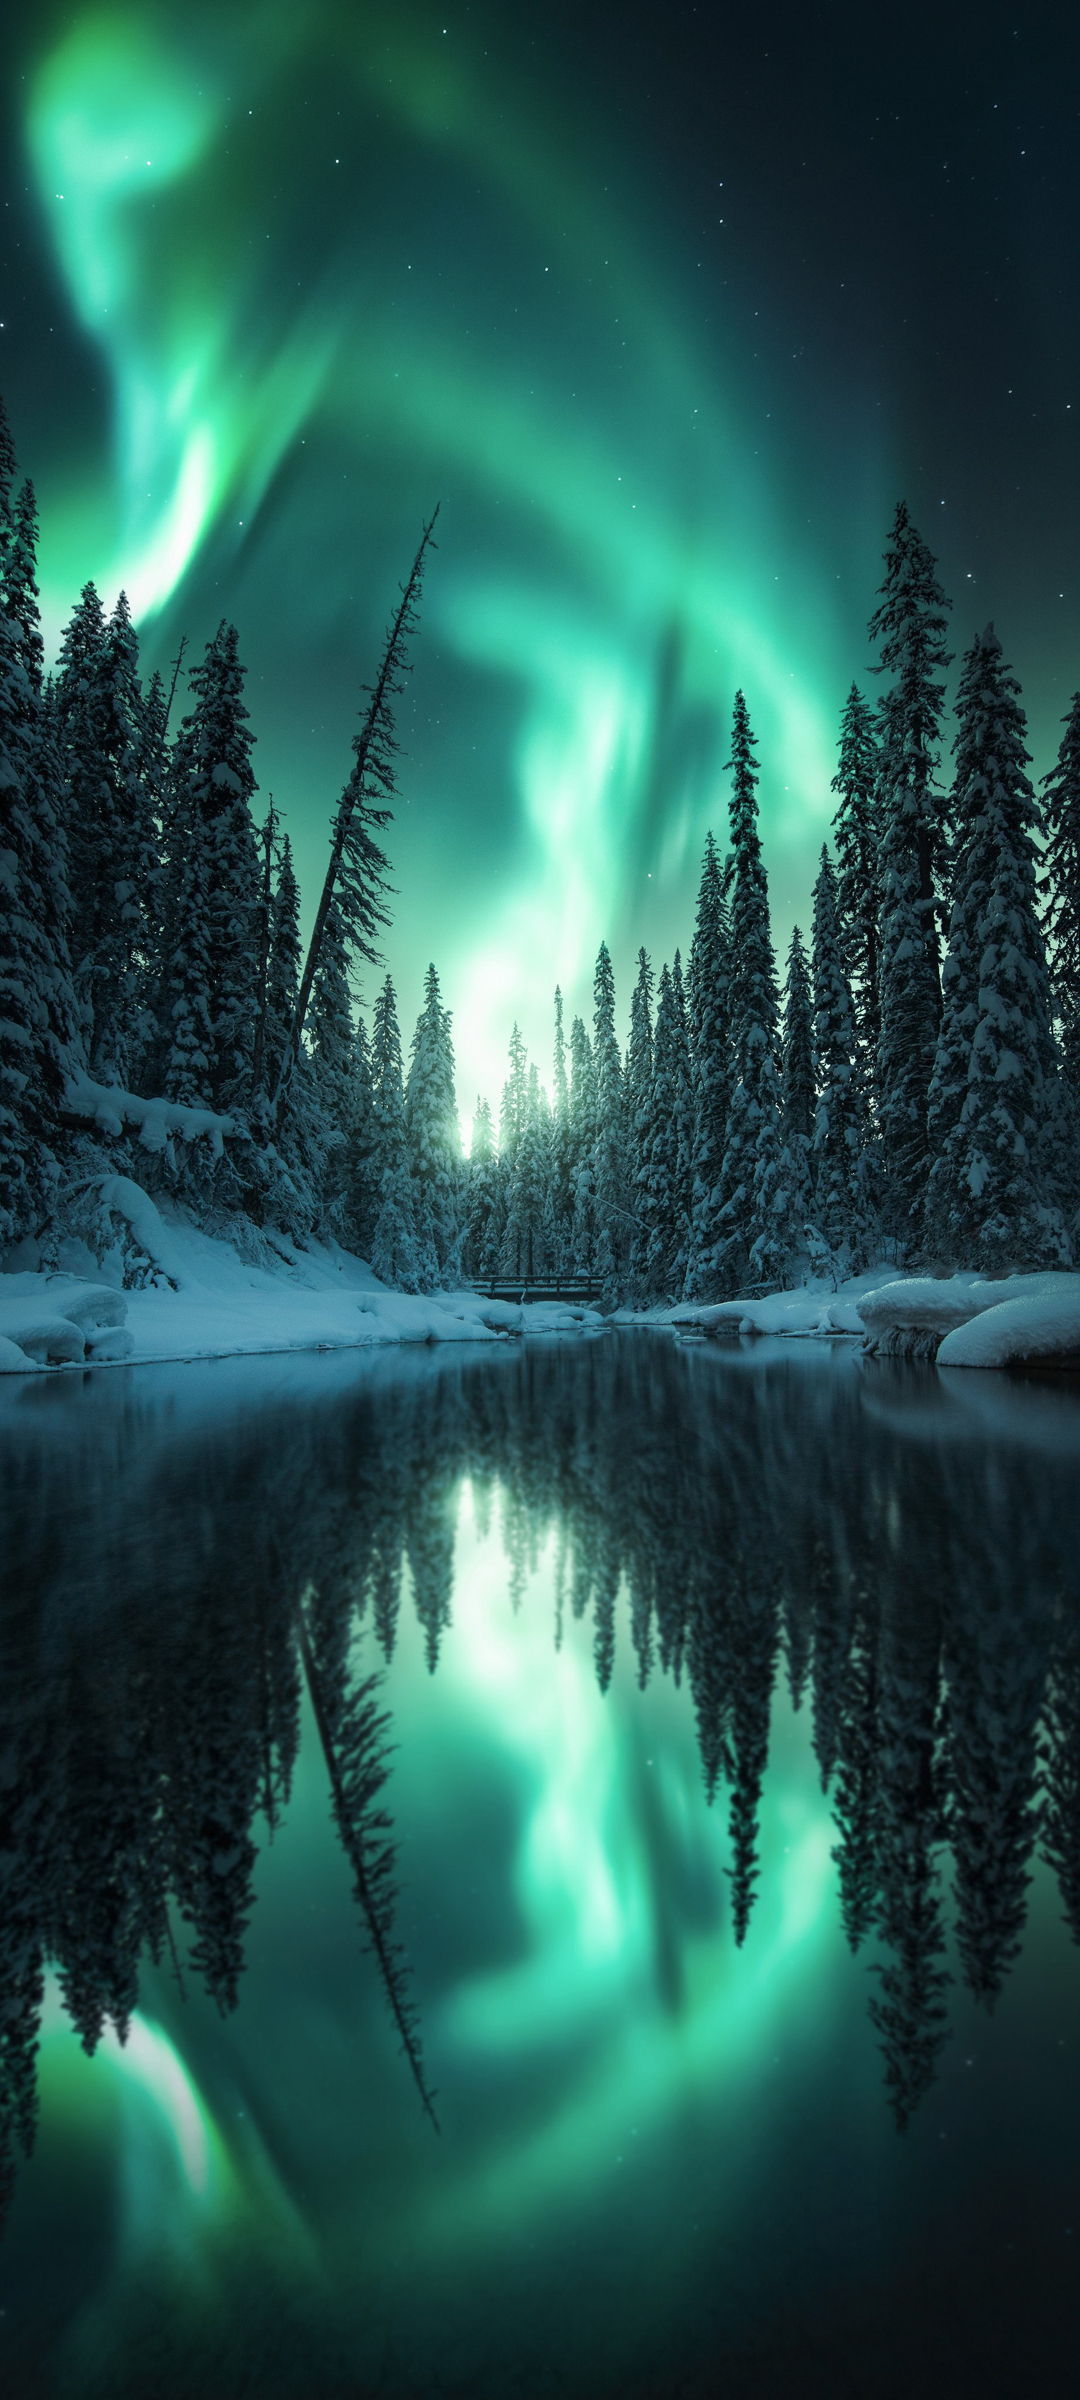 极光雪树水景，绝美手机壁纸免费下载，高清风景尽在掌握